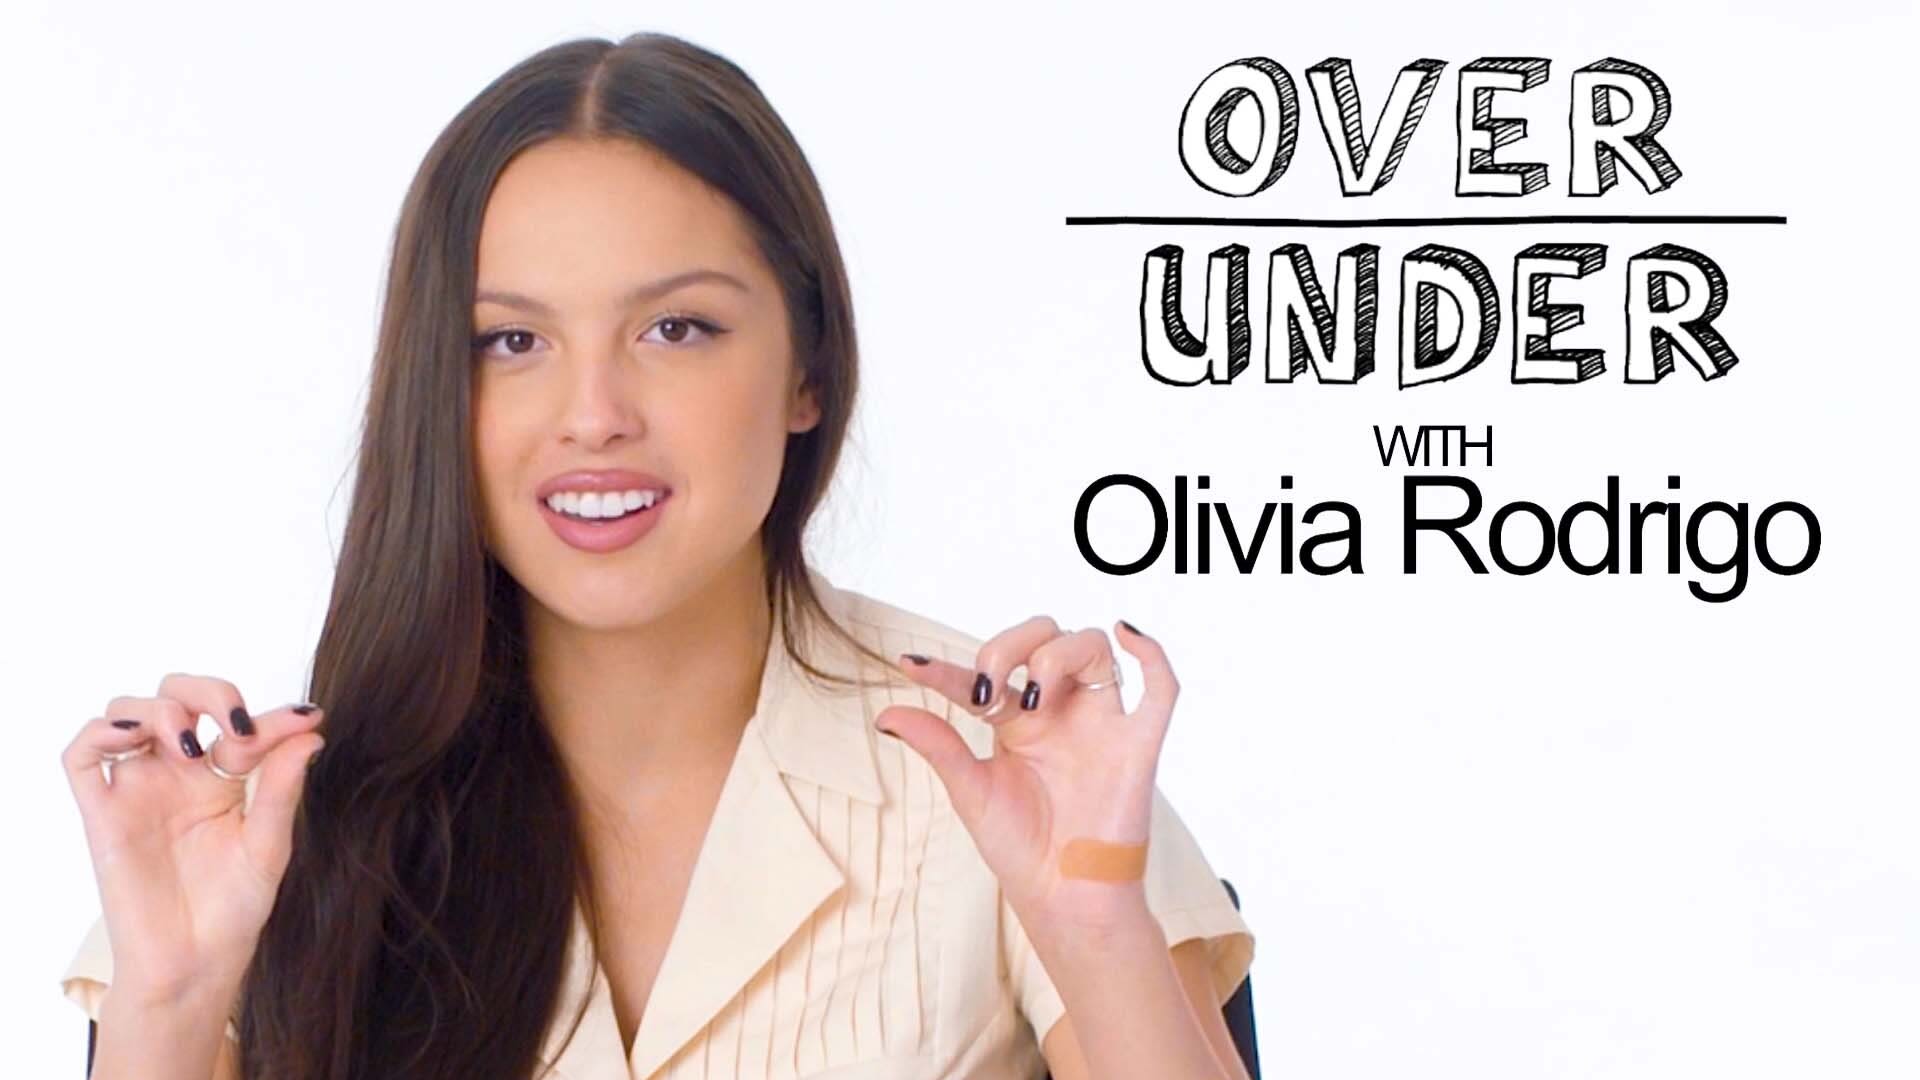 Olivia rodrigo porn video